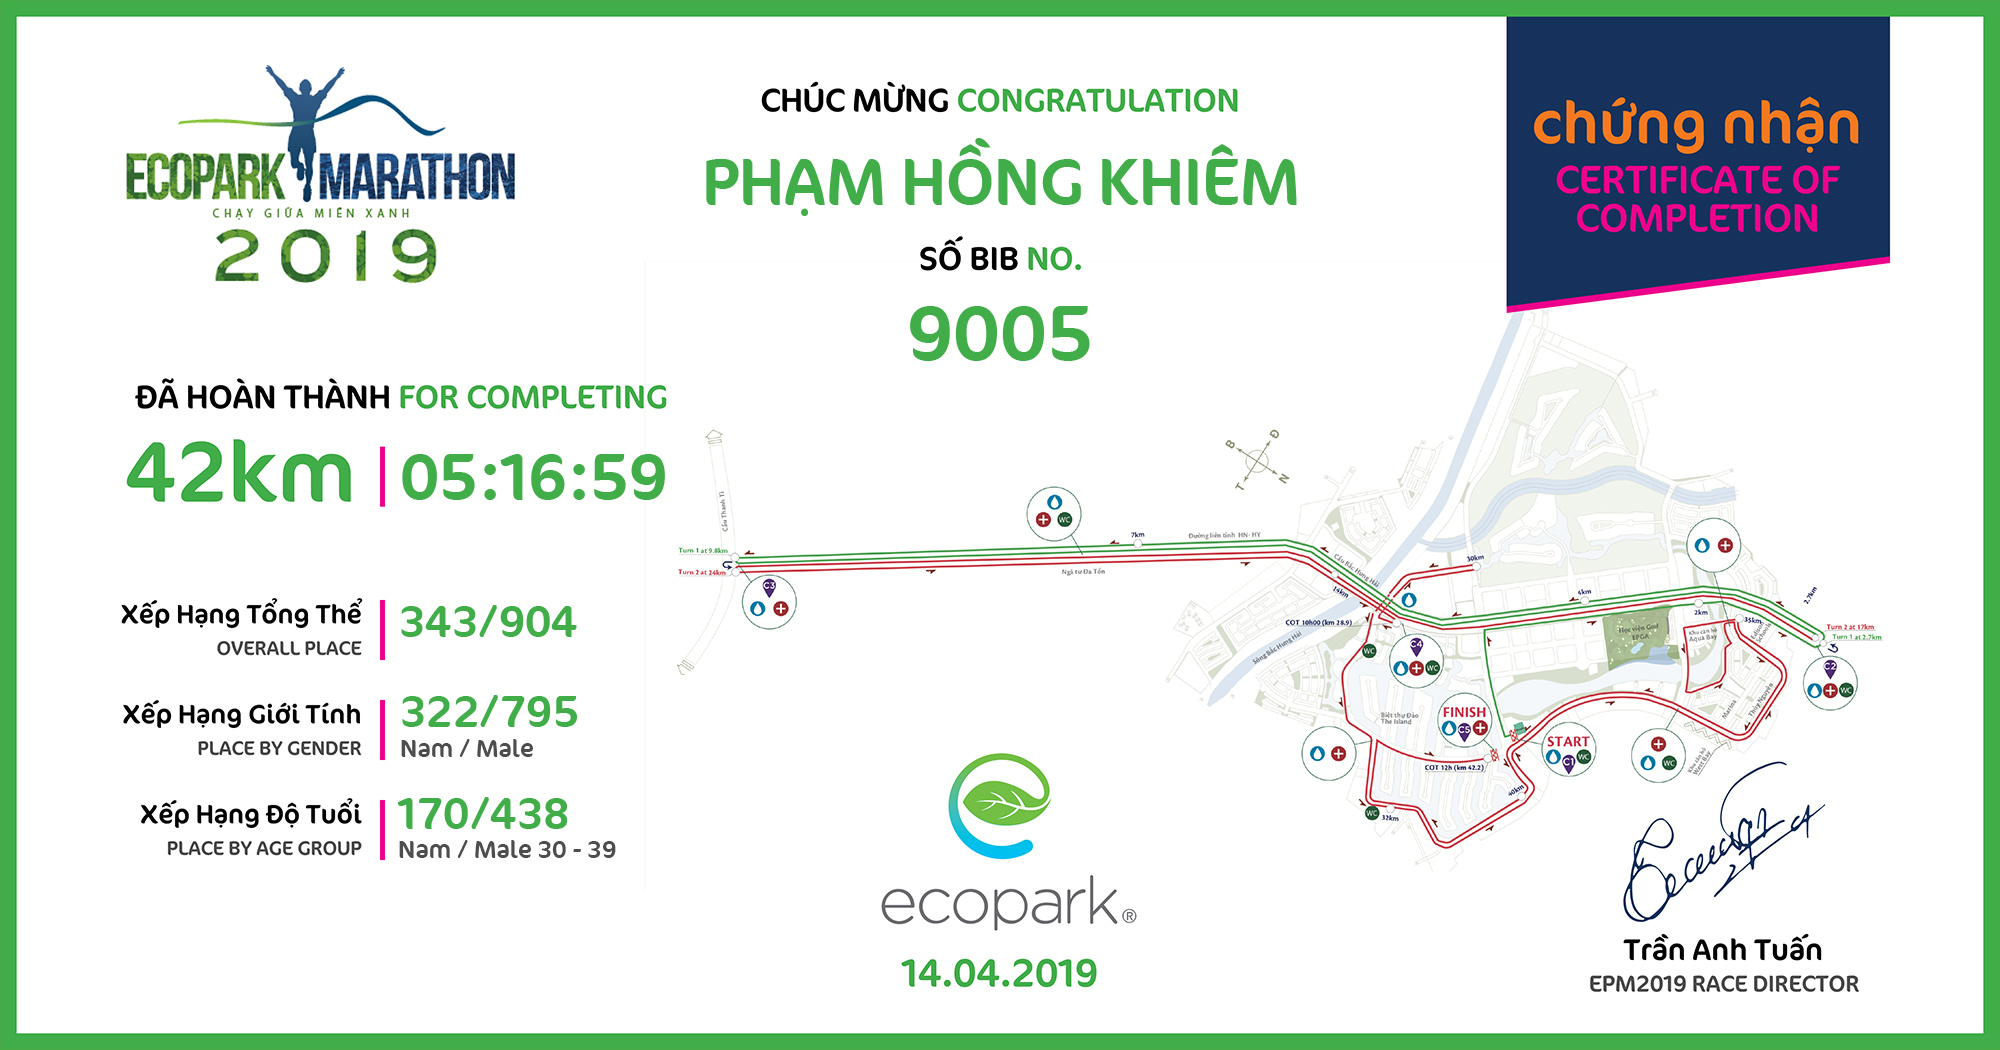 9005 - Phạm Hồng Khiêm